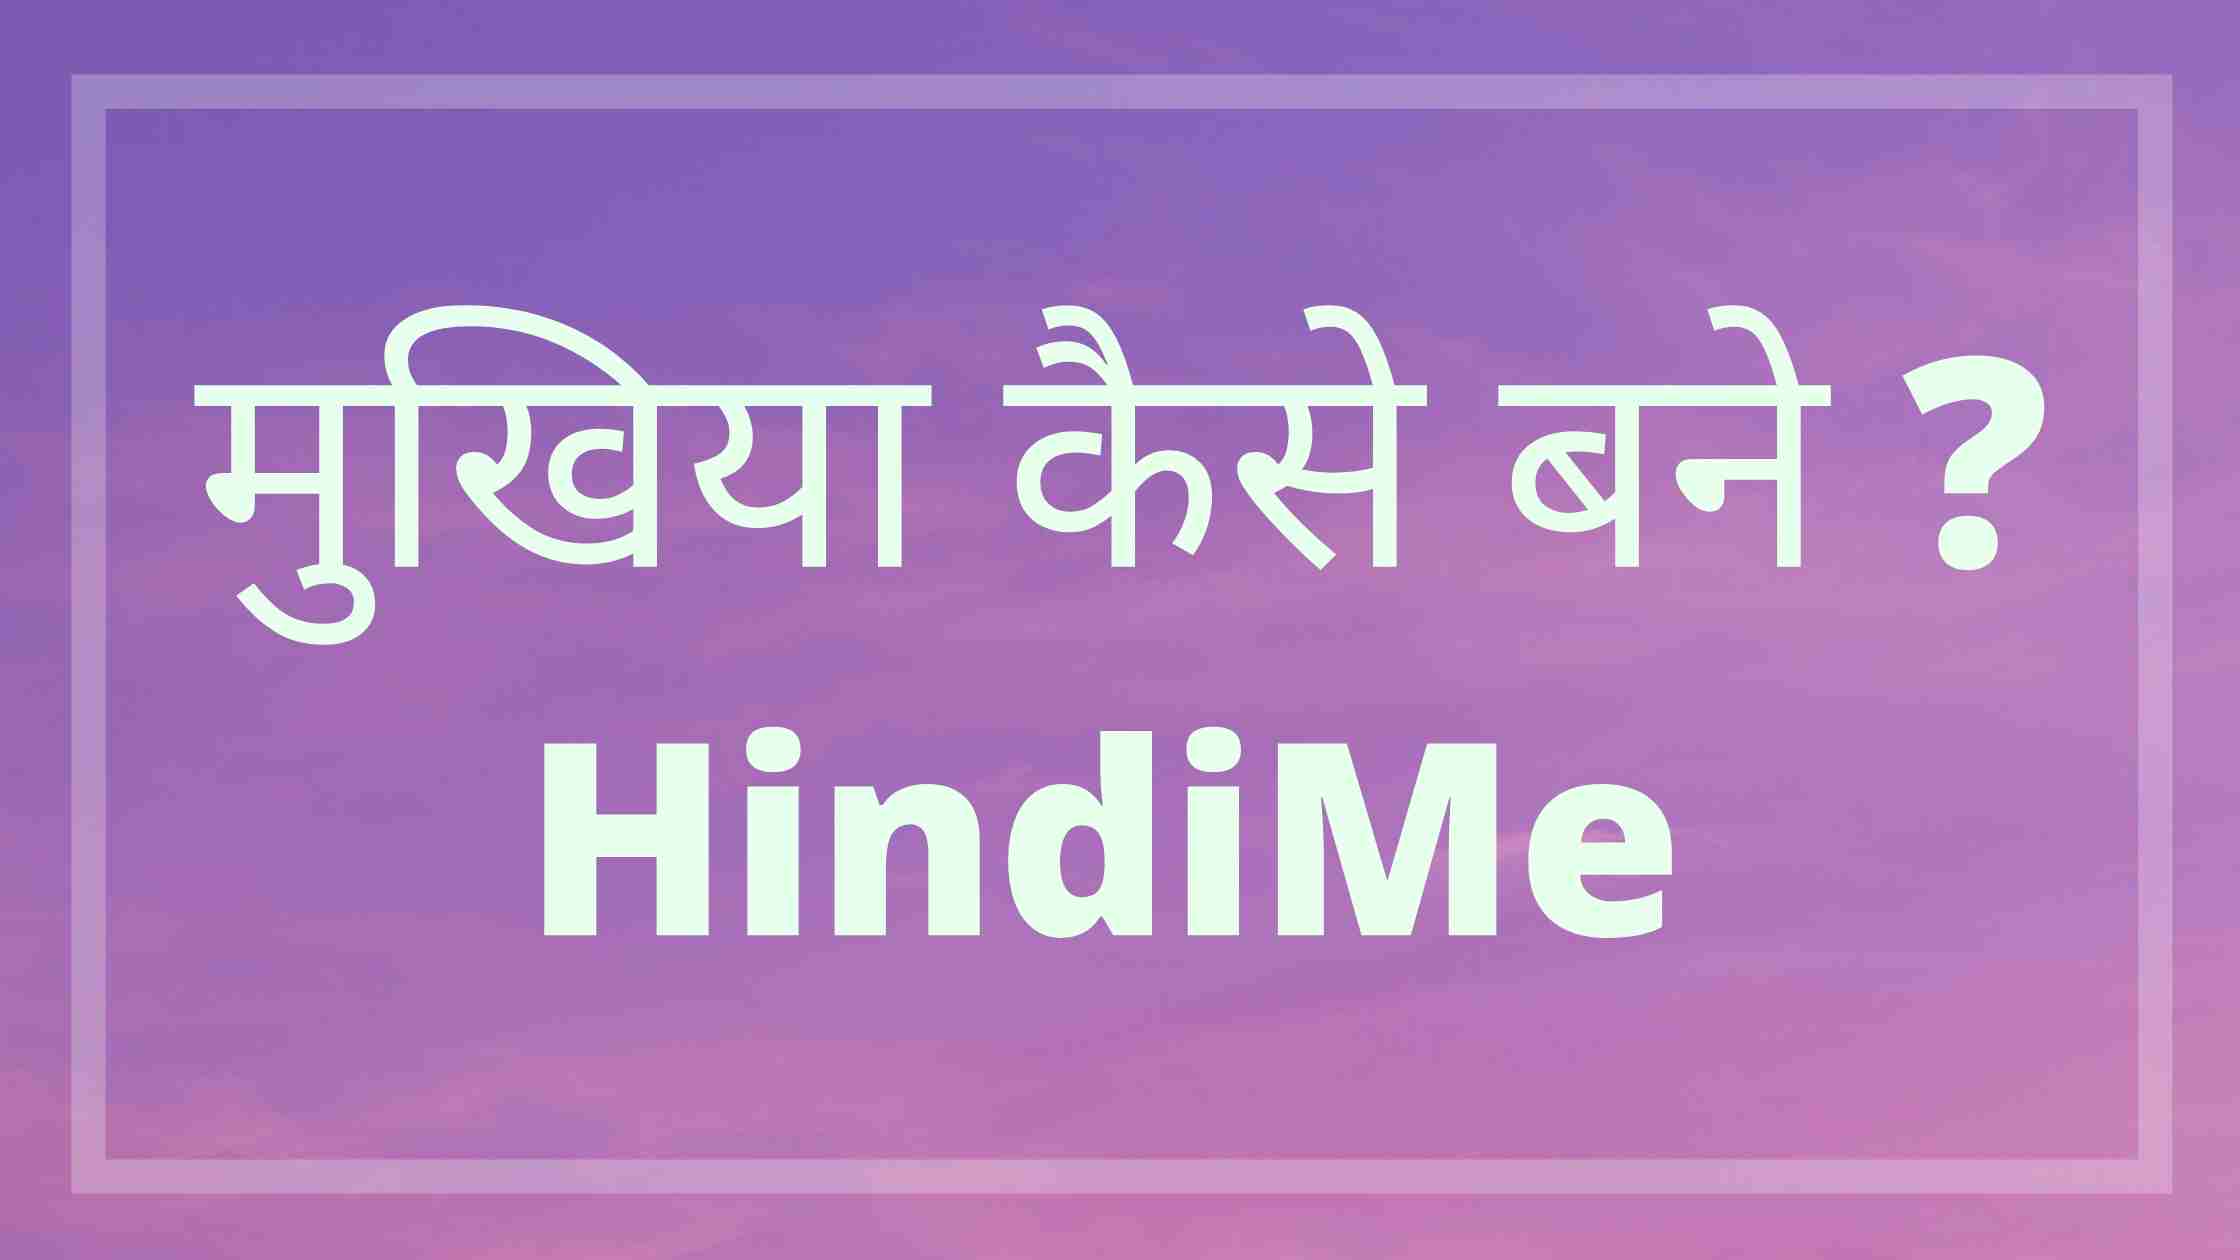 मुखिया कैसे बने हिंदी में - Mukhiya Kaise Bane